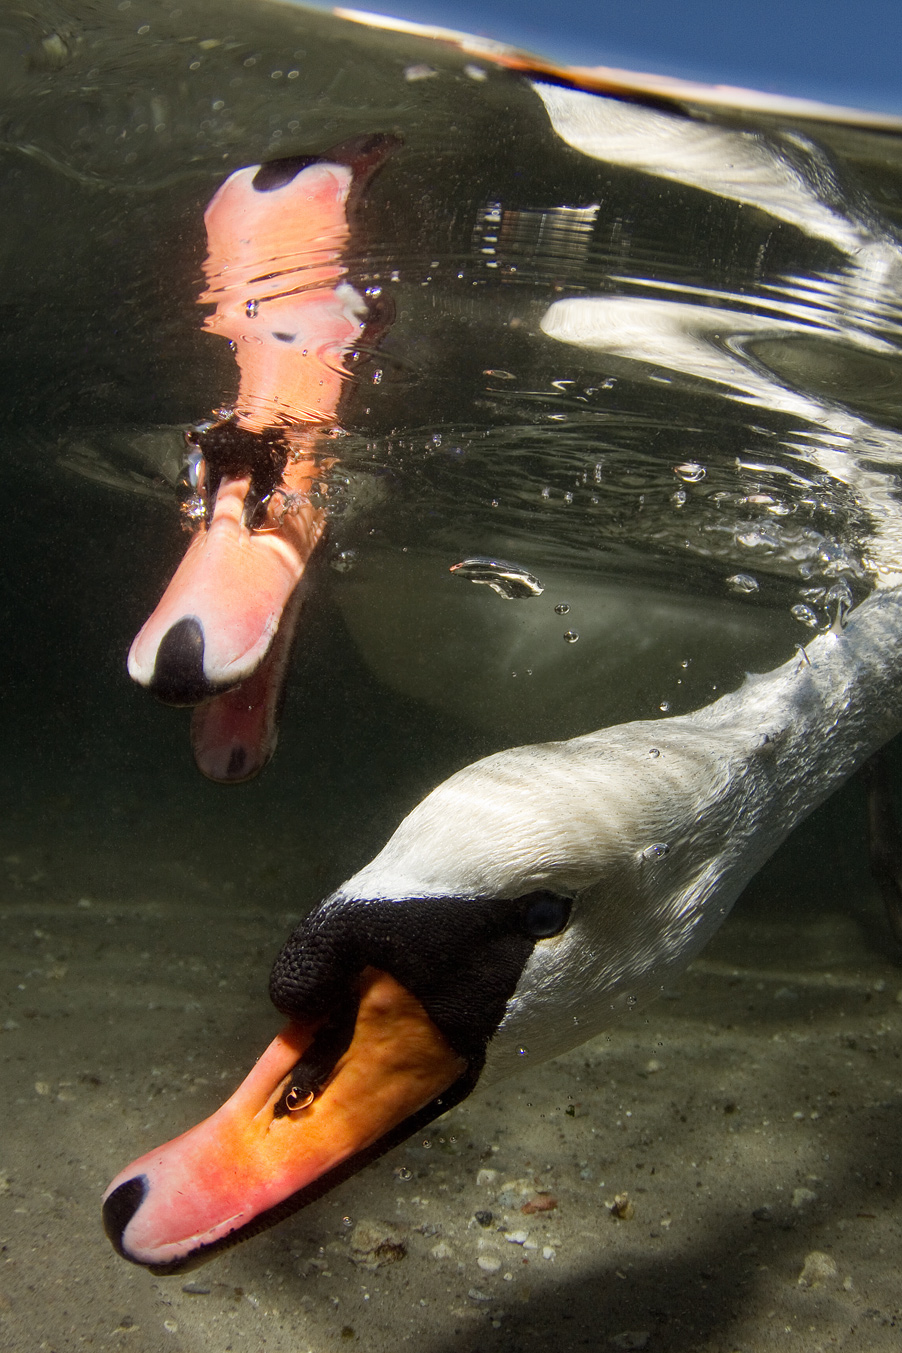 Knölsvan – Cygnus olorVi ser ofta svanar stå på huvudet i vattnet. Så här kan det se ut under ytan när de betar. De lever av vattenväxter som de når genom att ”beta” från sjöbottnen. Denna bild visar svanen under ytan. Foto: Jonna Bergström, årets naturfotograf 2013